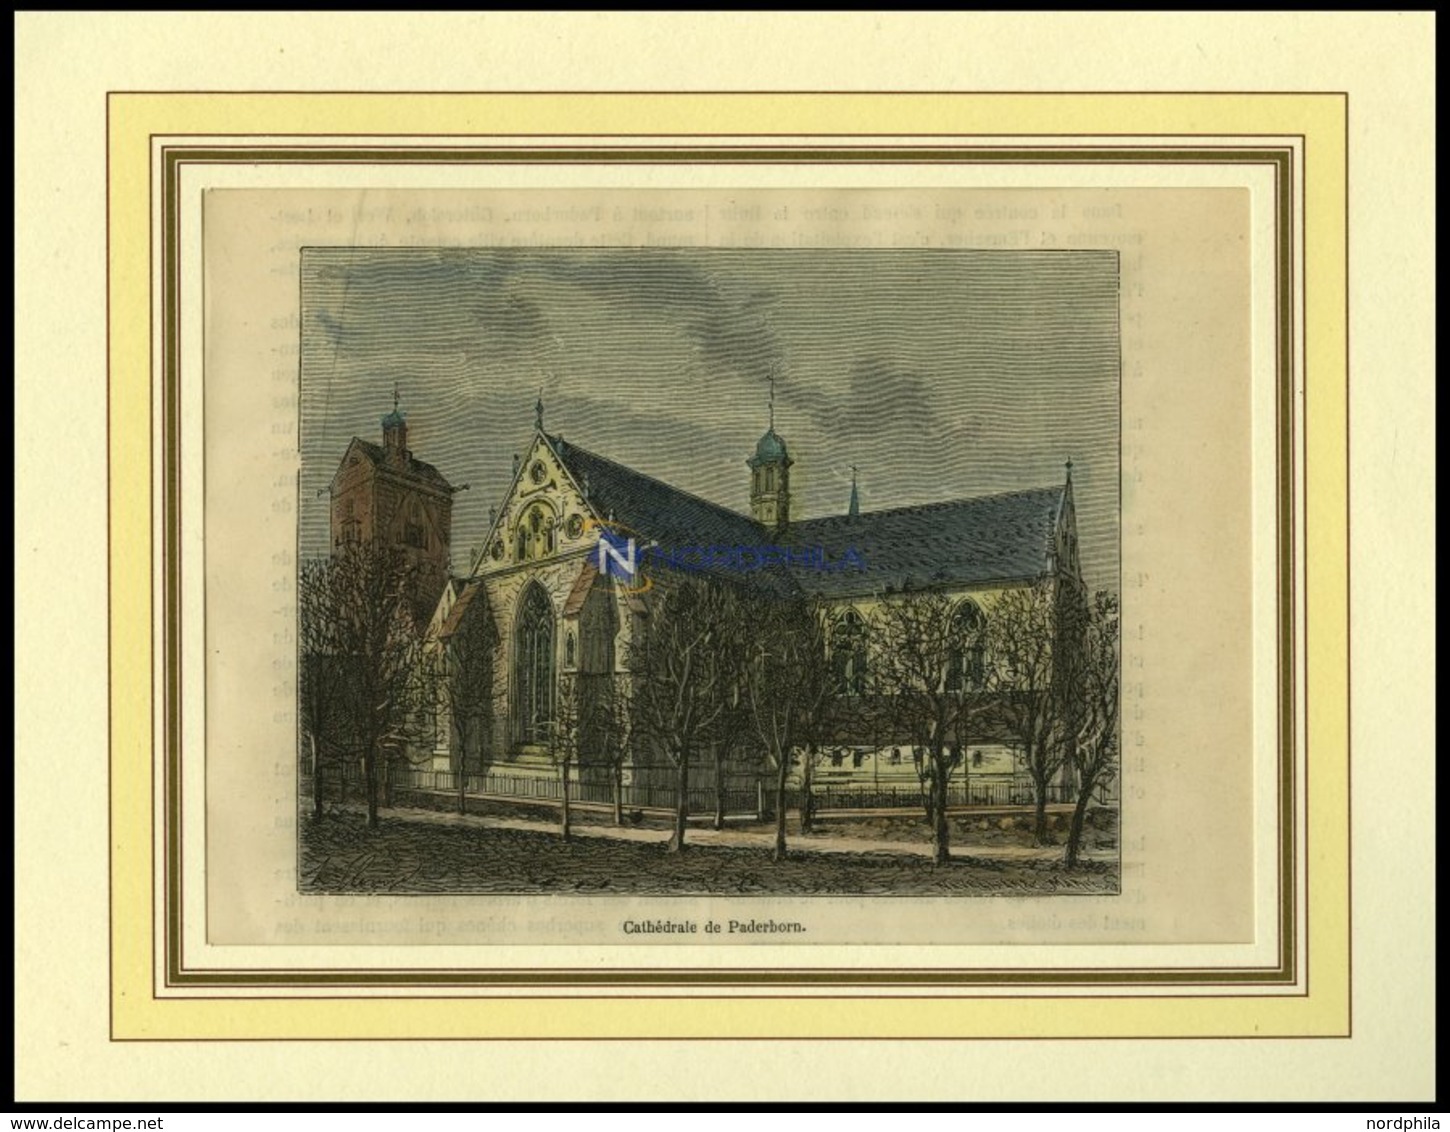 PADERBORN: Die Kathedrale, Kolorierter Holzstich Um 1880 - Lithographien